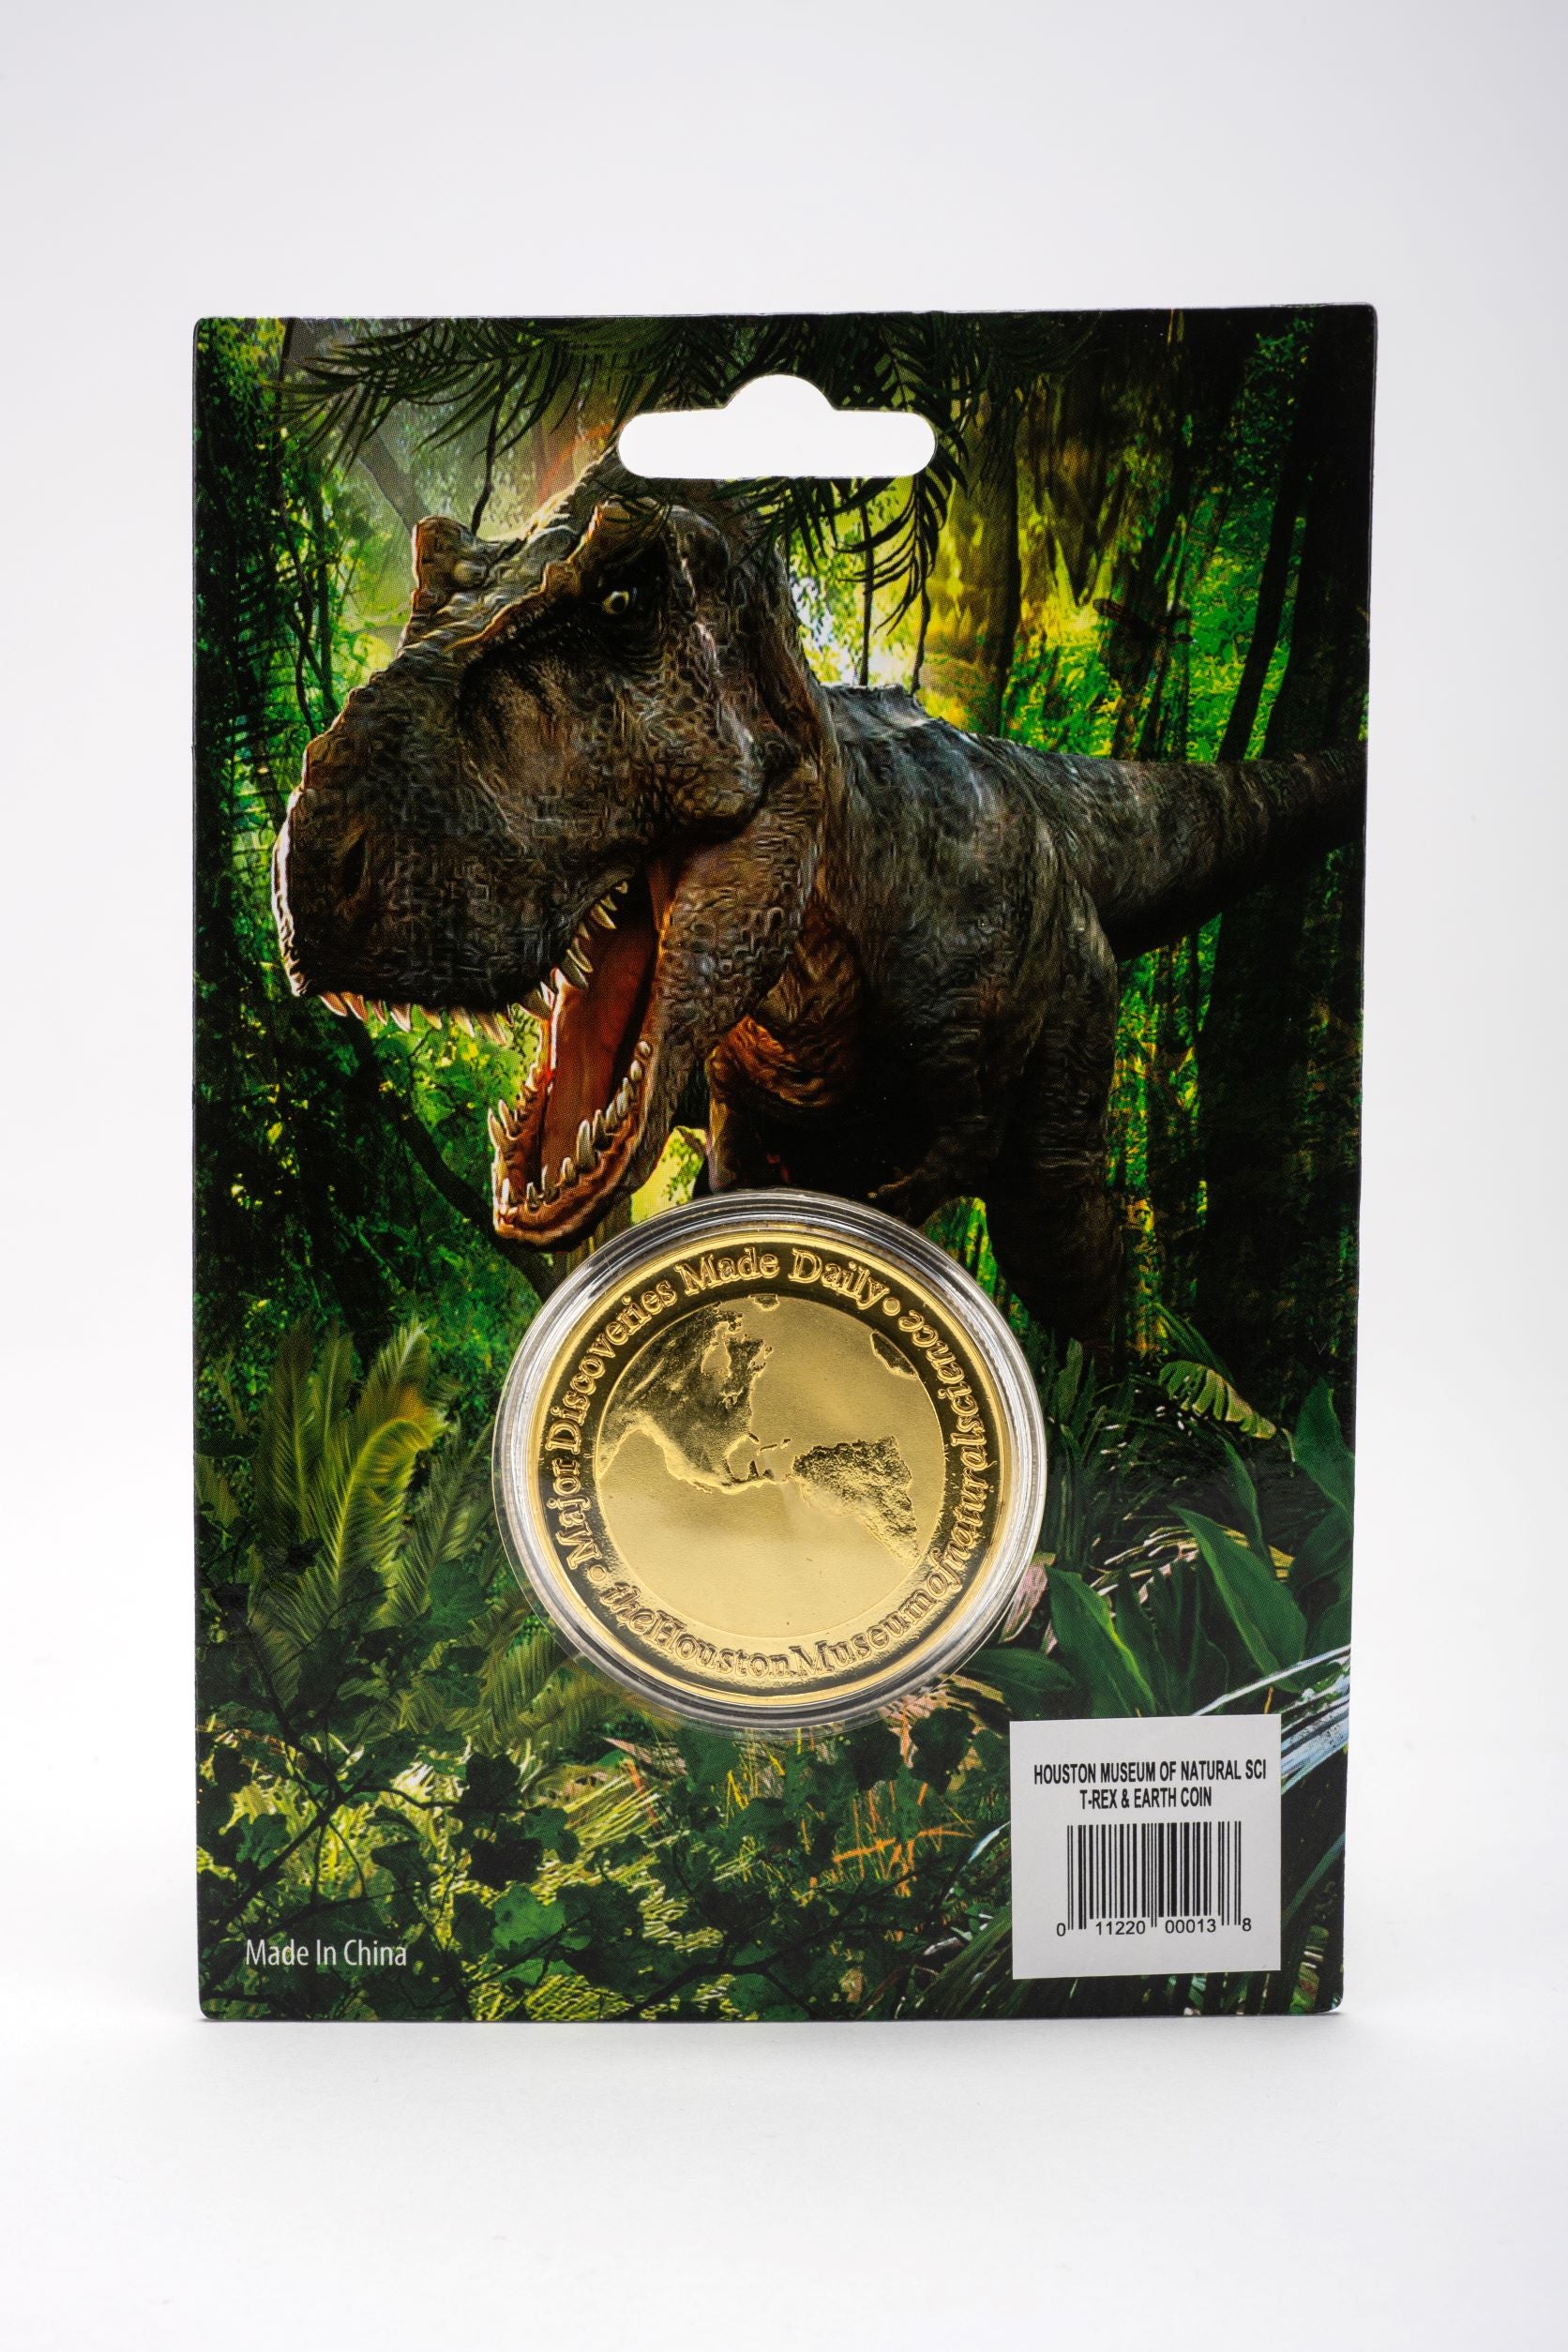 HMNS Dinosaur Memorabilia Coin